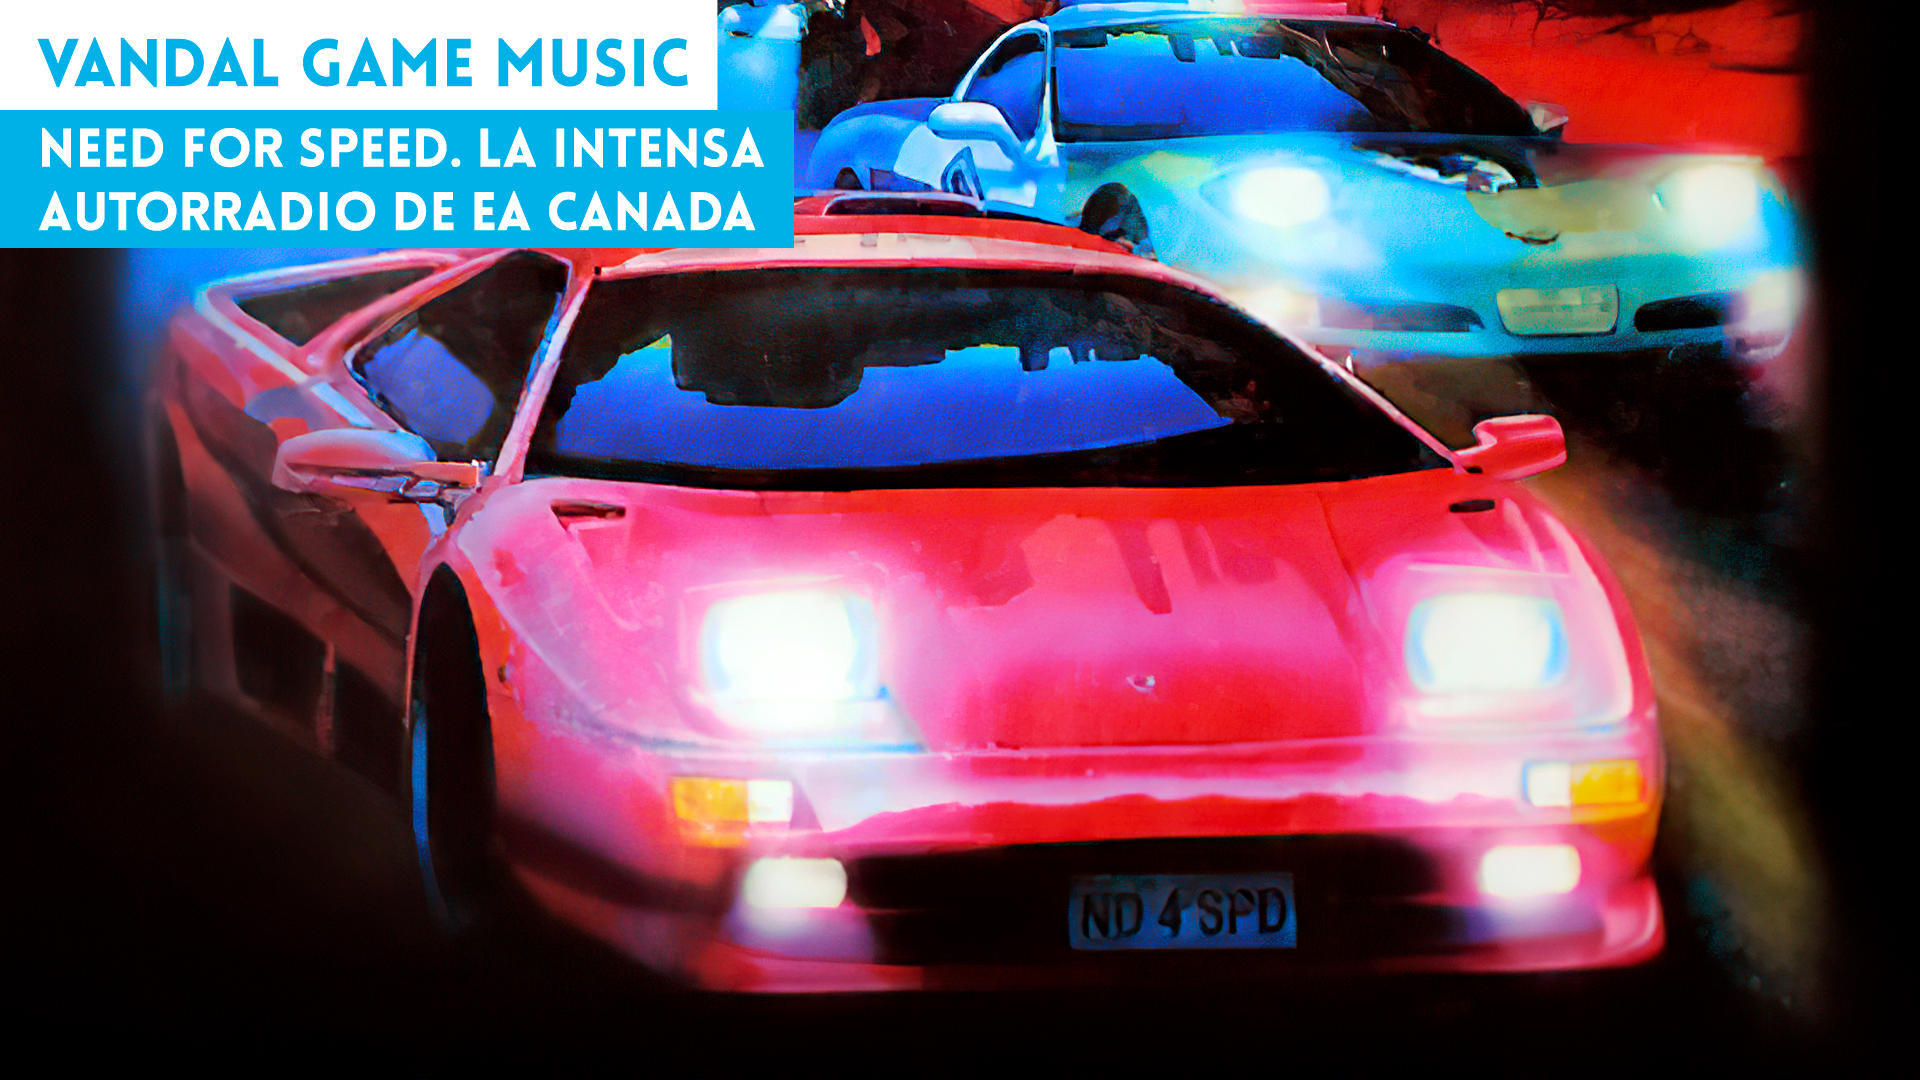 Need for Speed. La intensa autorradio de EA Canada